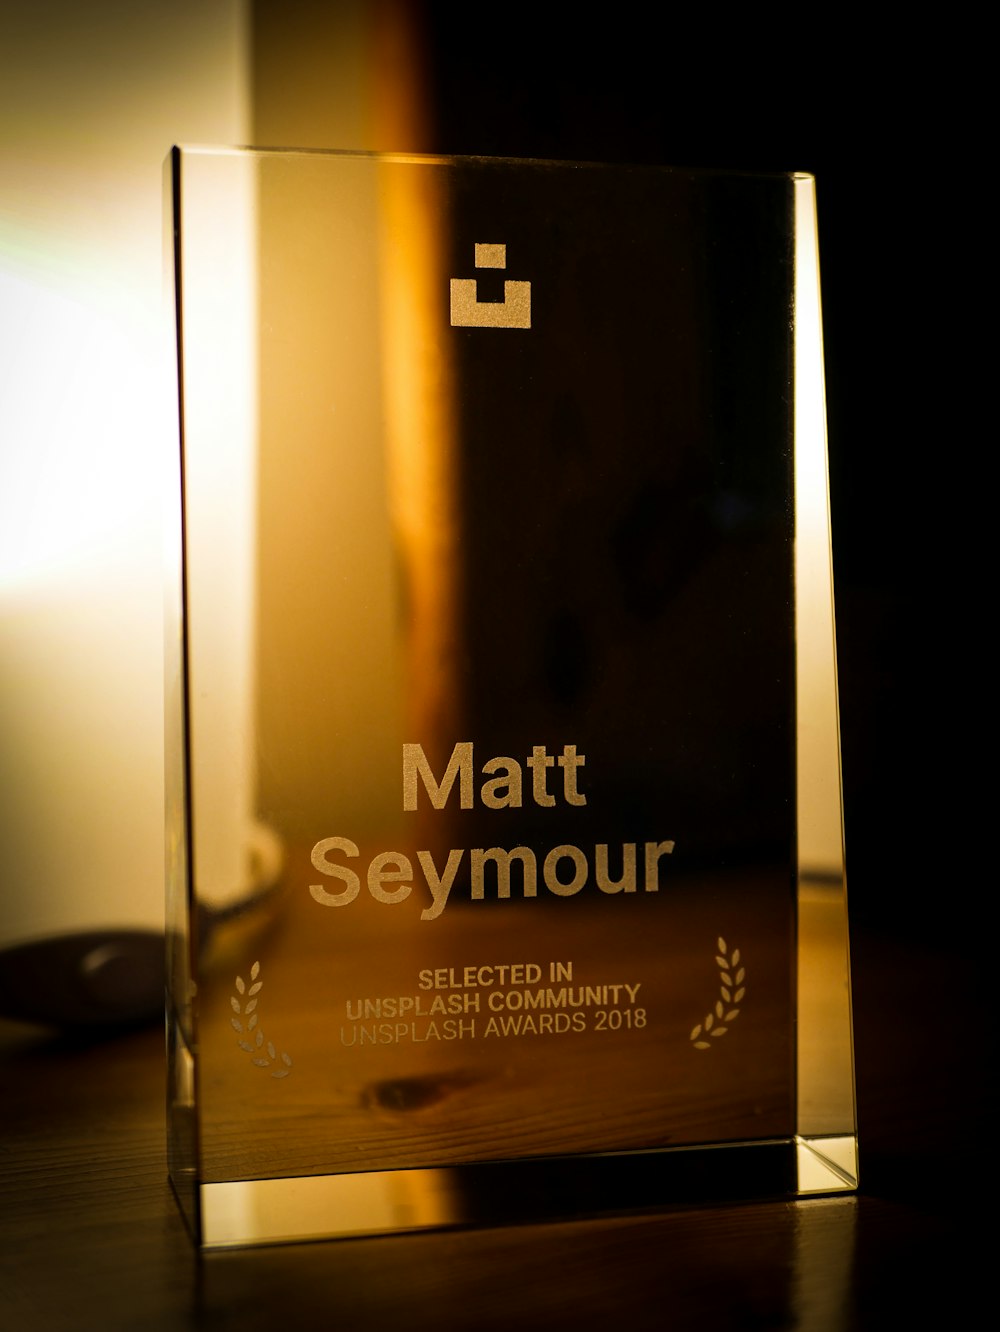 Placa de Matt Seymour en el escritorio